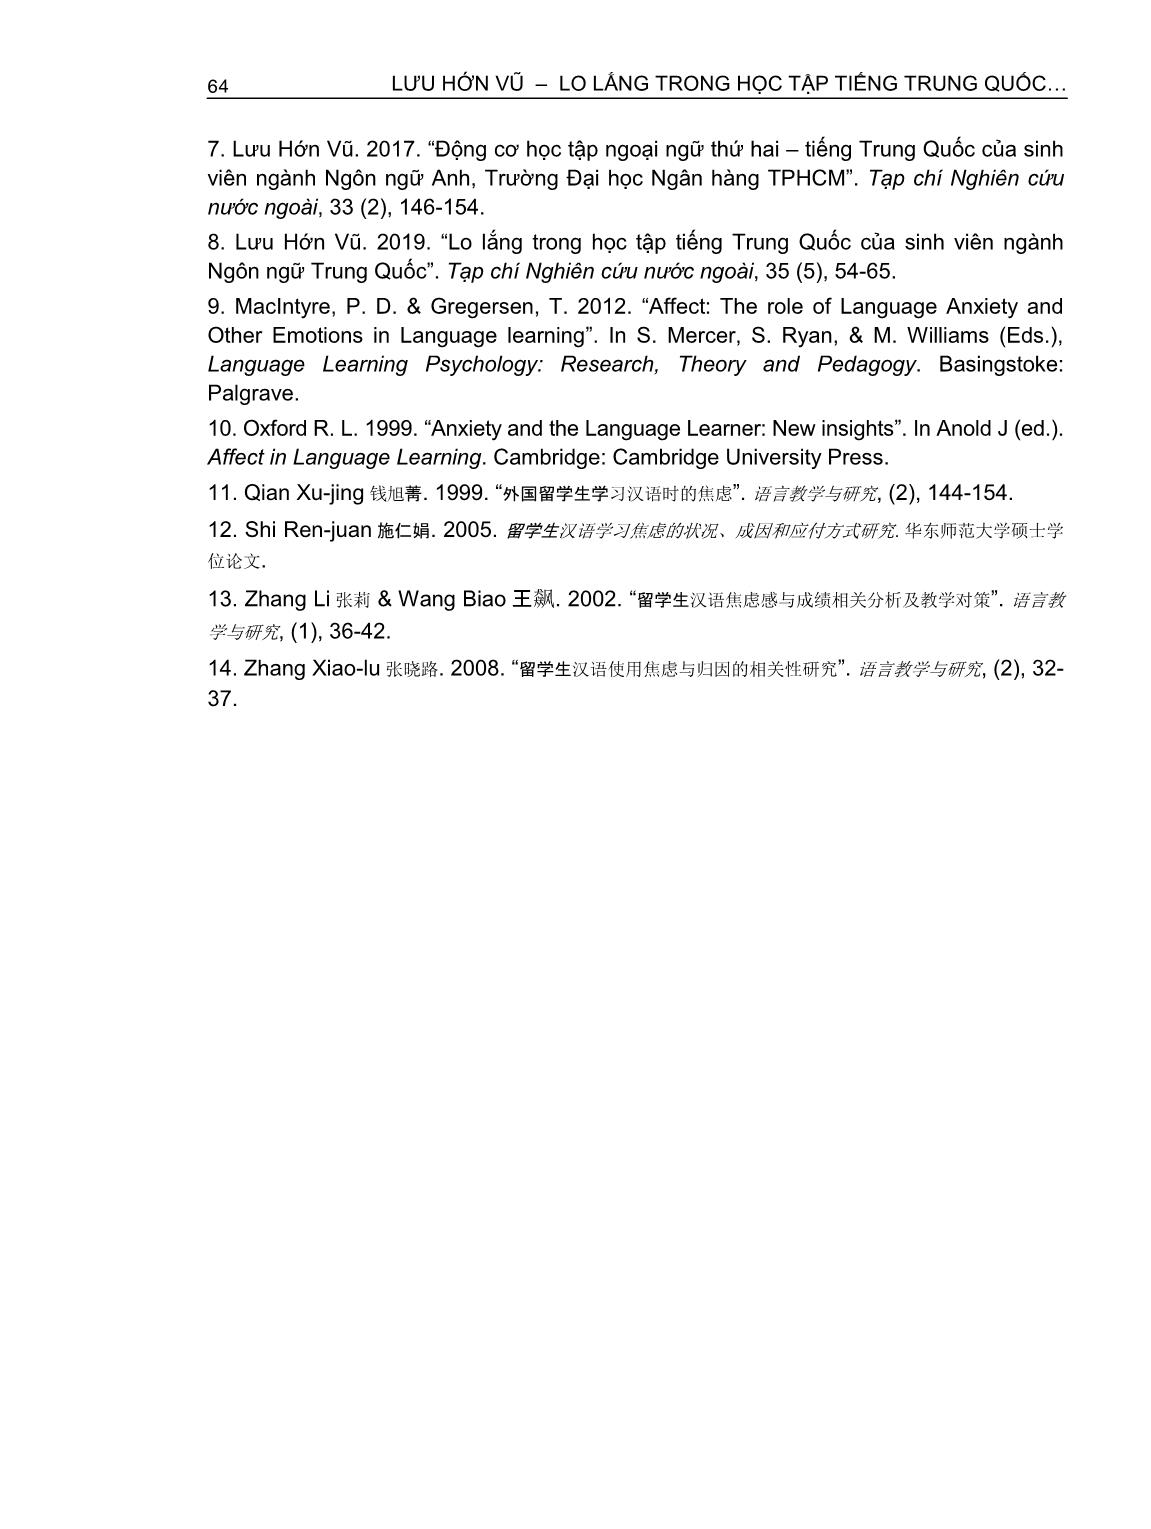 Lo lắng trong học tập tiếng Trung Quốc - Ngoại ngữ thứ hai của sinh viên ngành Ngôn ngữ anh (Trường hợp Trường Đại học Ngân hàng thành phố Hồ Chí Minh) trang 10